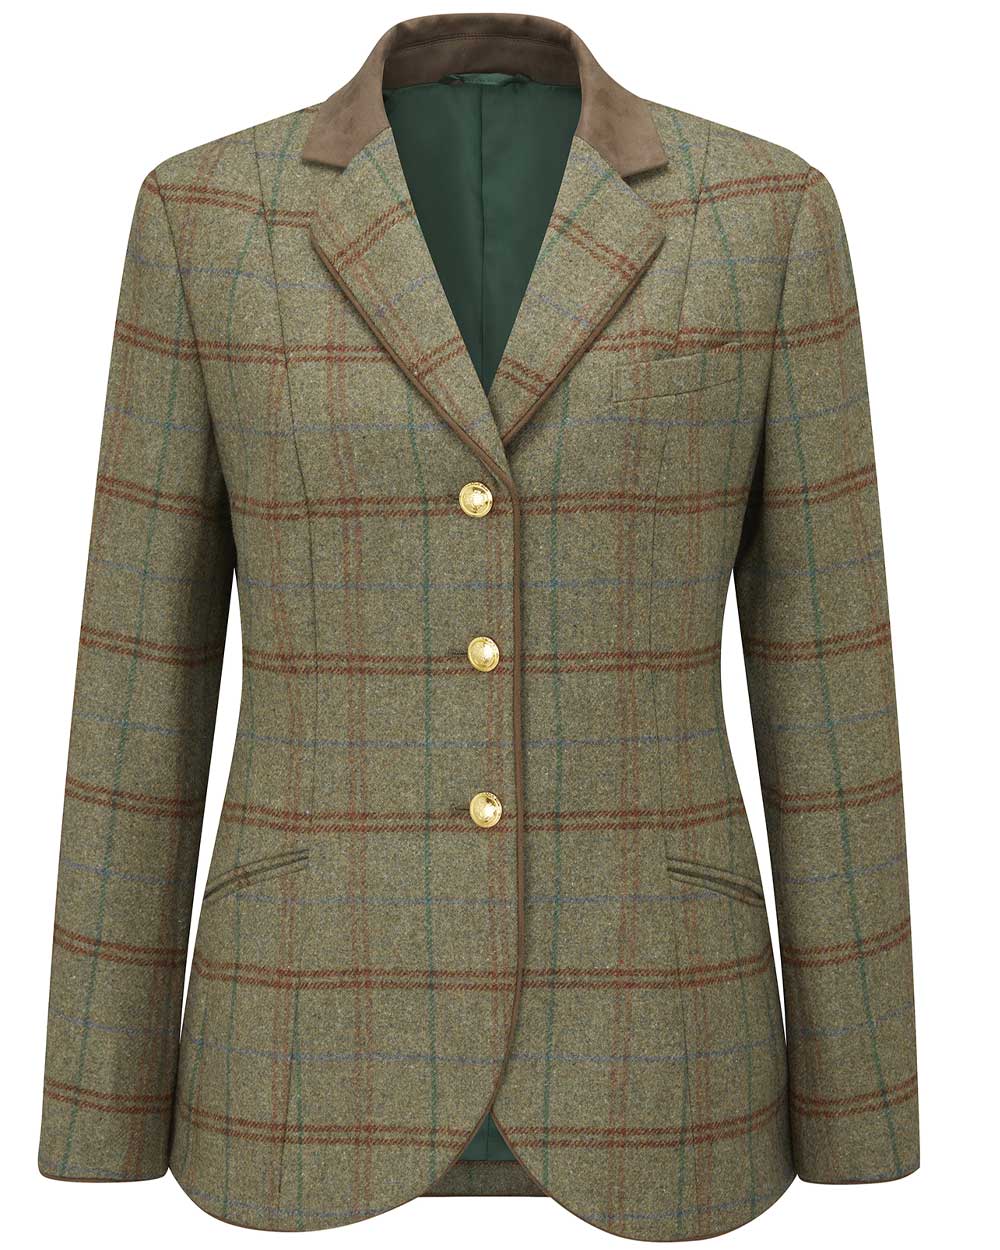 Alan Paine Surrey Ladies Tweed Blazer in Clover 